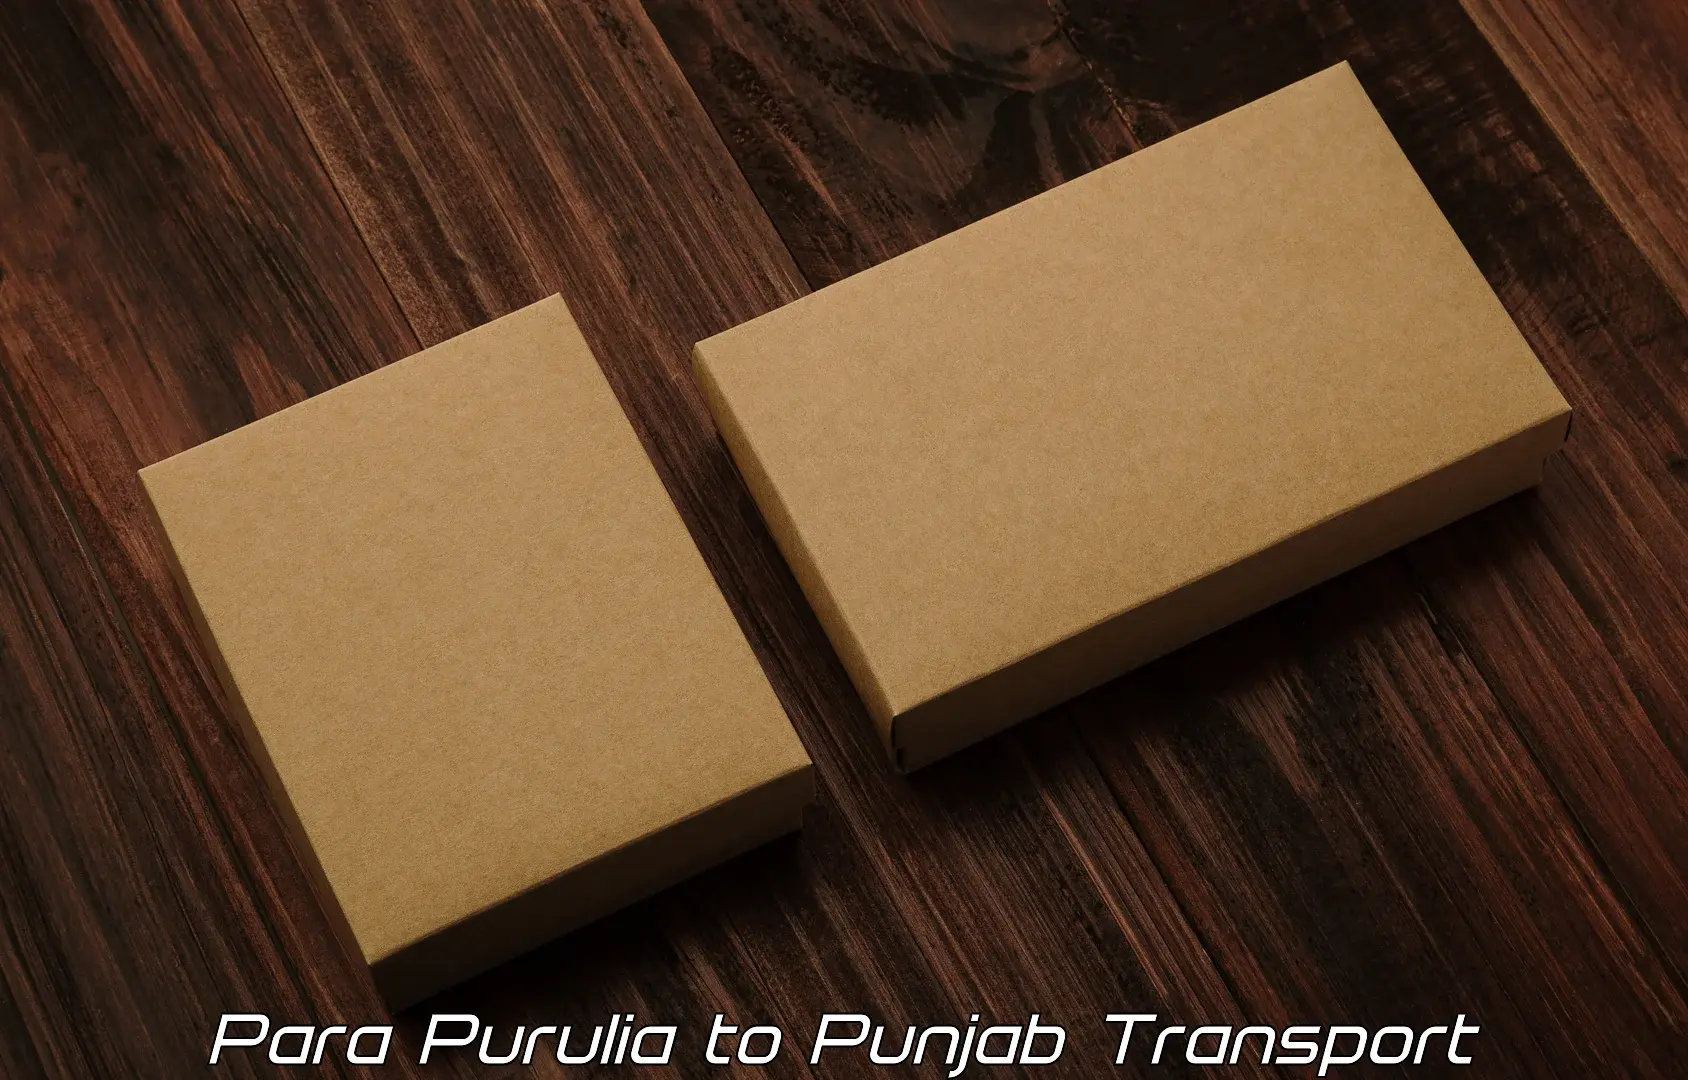 Express transport services Para Purulia to Rupnagar